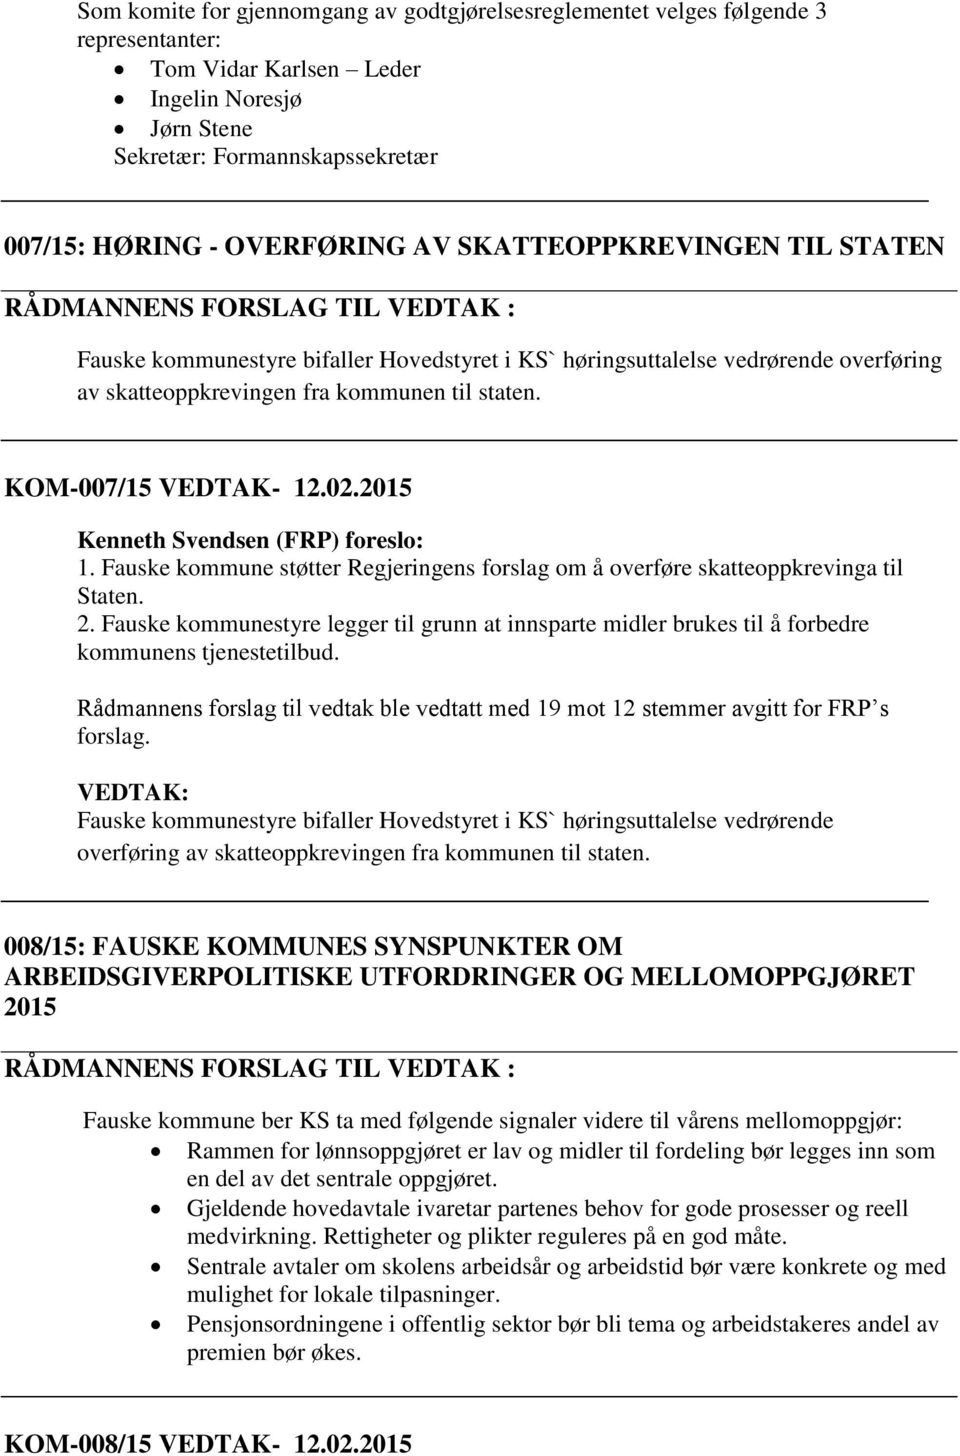 KOM-007/15 VEDTAK- 12.02.2015 Kenneth Svendsen (FRP) foreslo: 1. Fauske kommune støtter Regjeringens forslag om å overføre skatteoppkrevinga til Staten. 2.